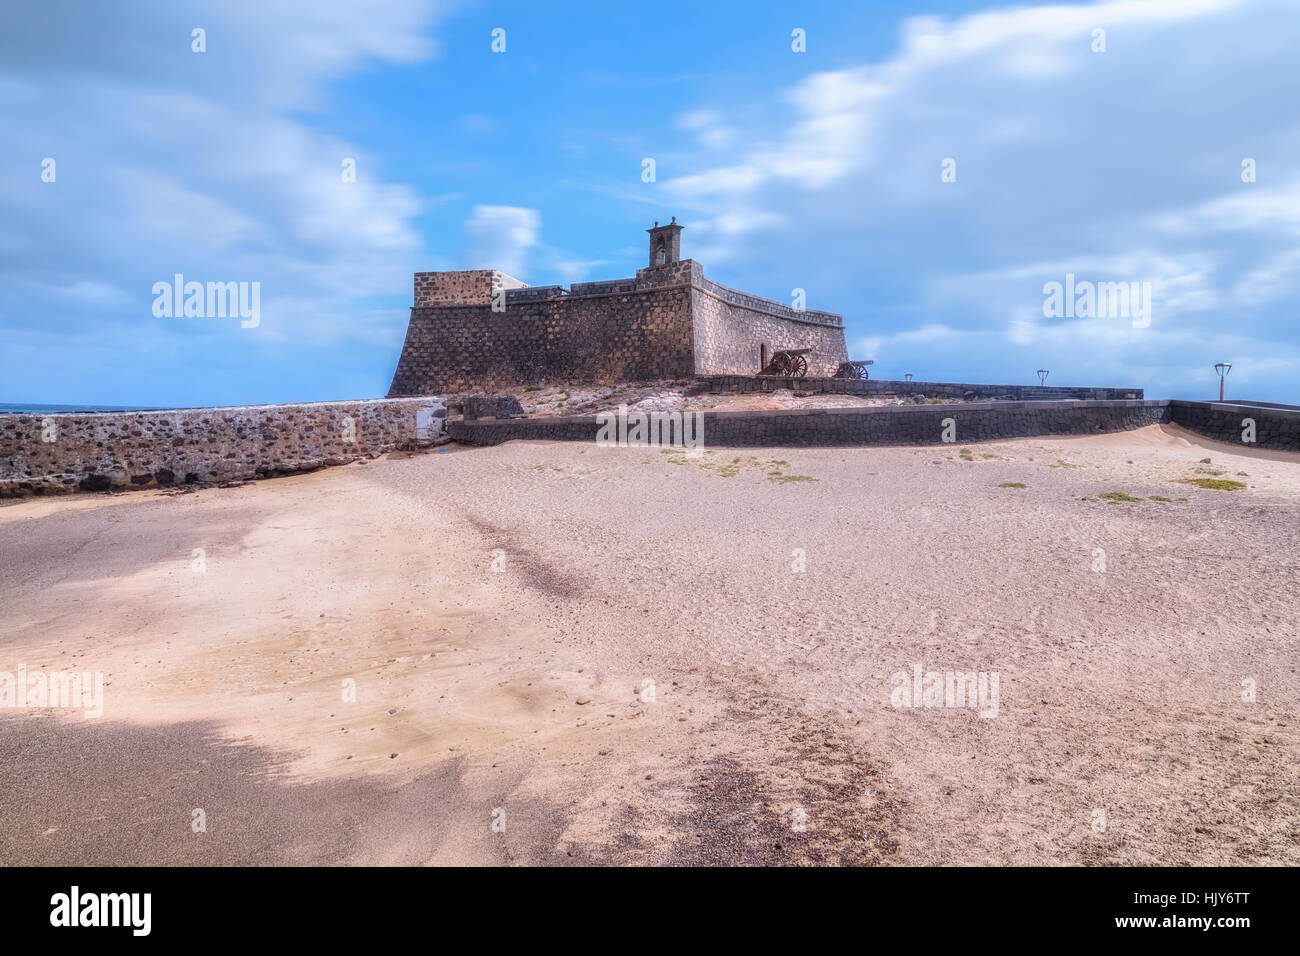 Castillo de San Gabriel, Arrecife, Lanzarote, îles Canaries, Espagne Banque D'Images